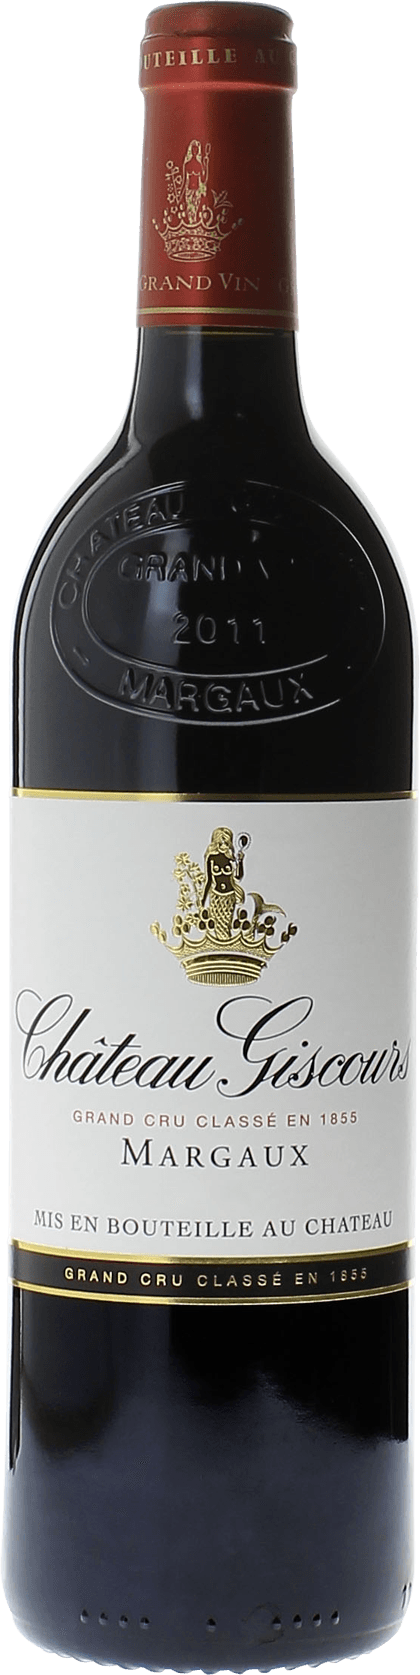 Giscours 2002 3me Grand cru class Margaux, Bordeaux rouge